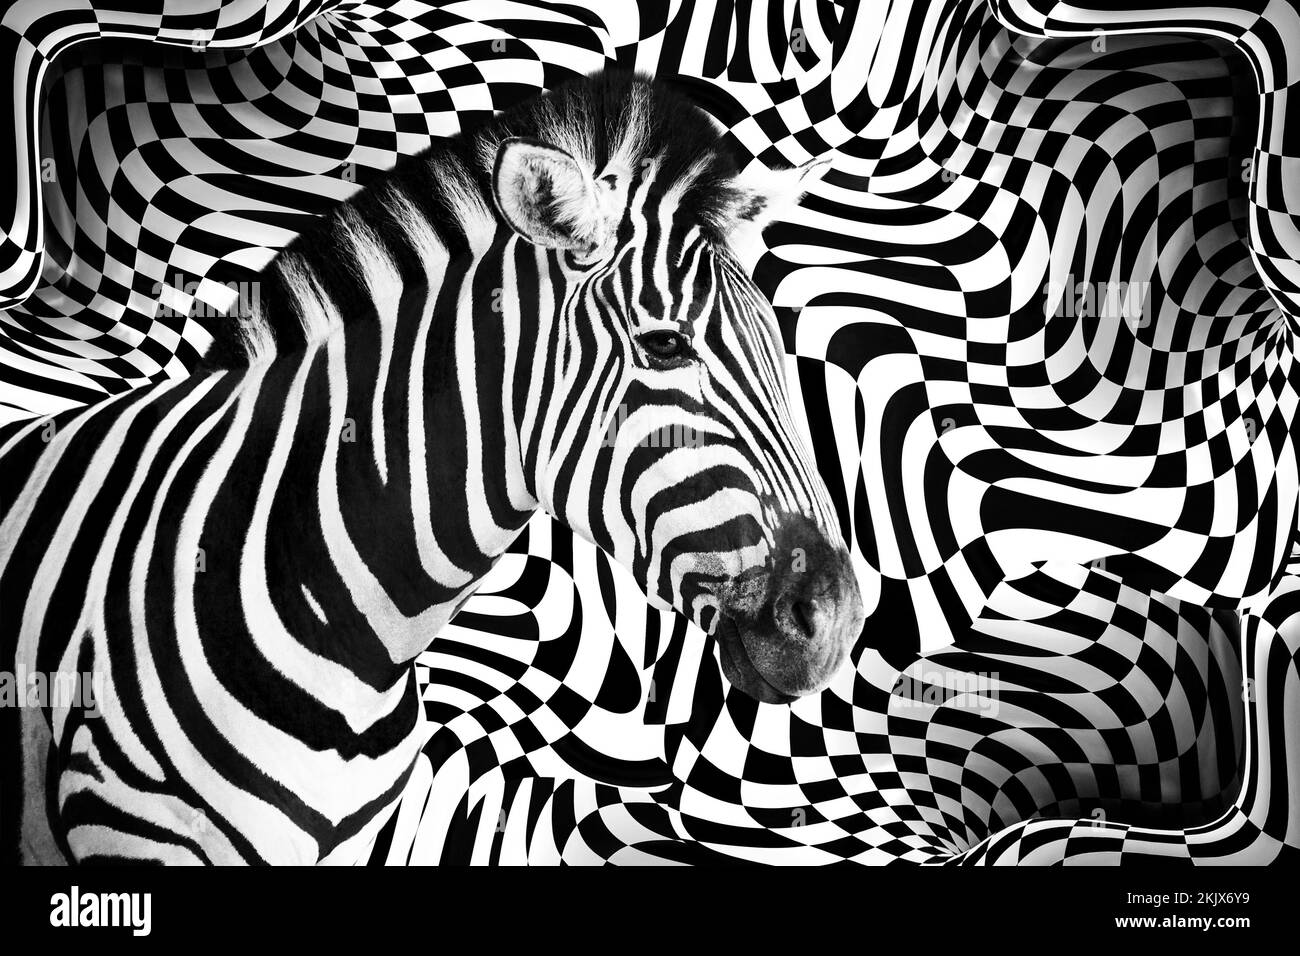 Detaildarstellung eines Zebrakopfes über einem abstrakten schwarz-weißen 3D-Bildhintergrund. Stockfoto